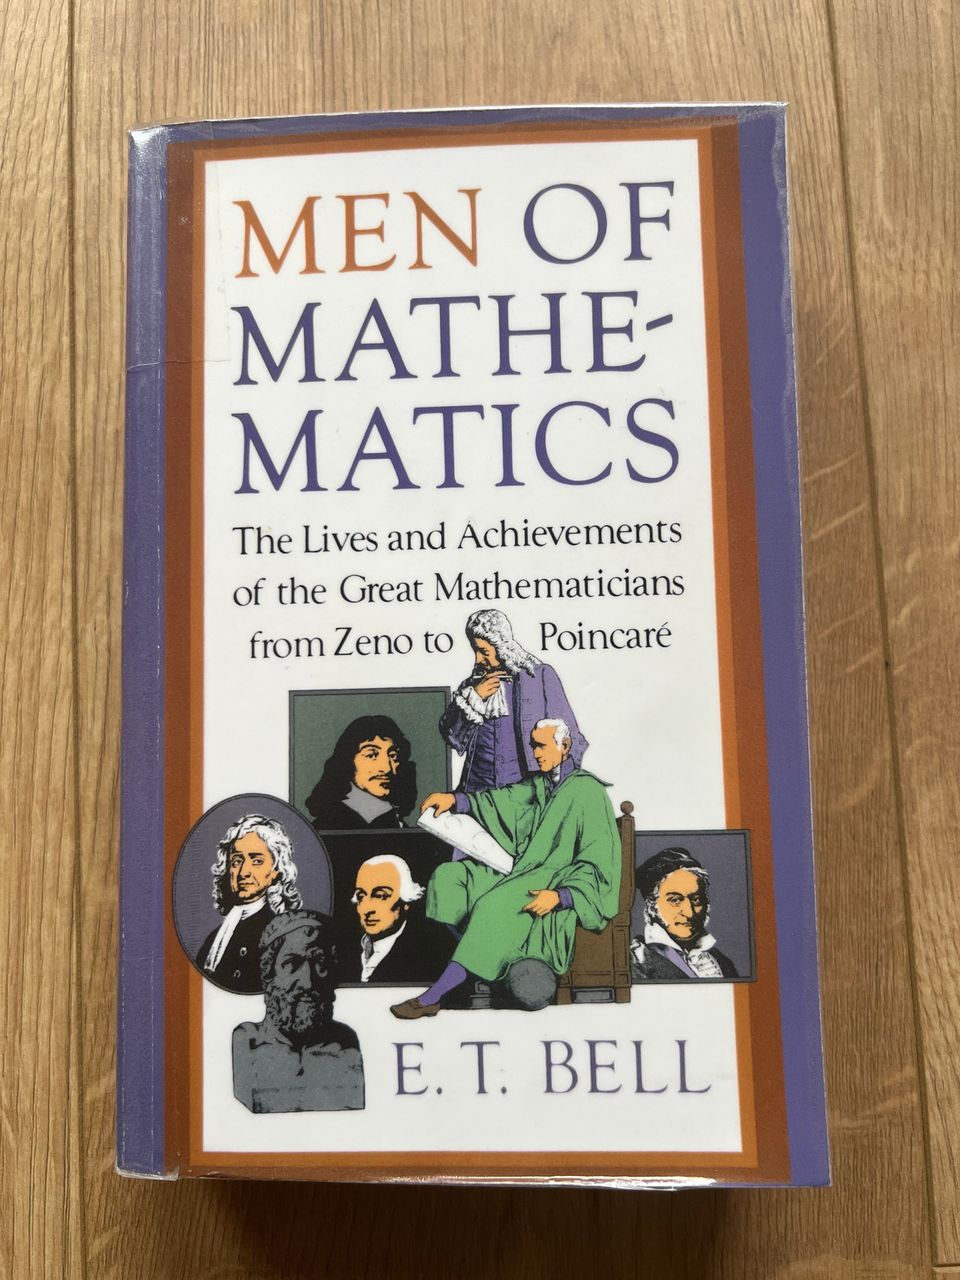 E.T Bell - Men of Mathematics